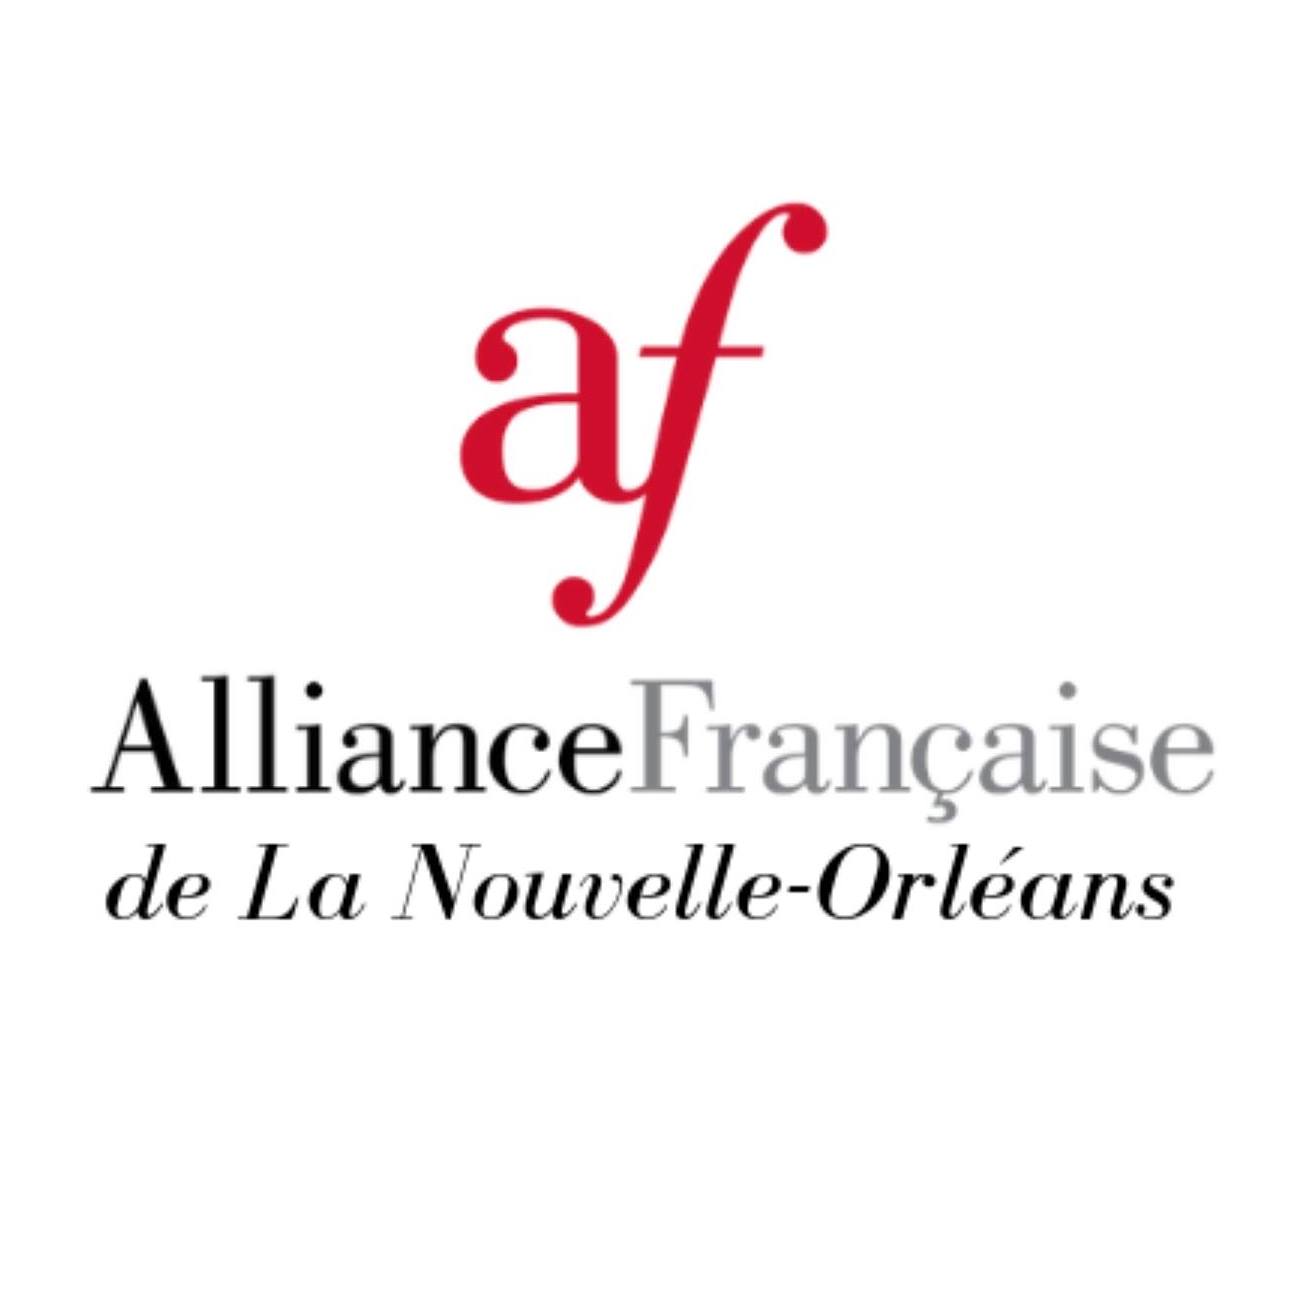 French Organization in New Orleans LA - Alliance Francaise de la Nouvelle Orléans